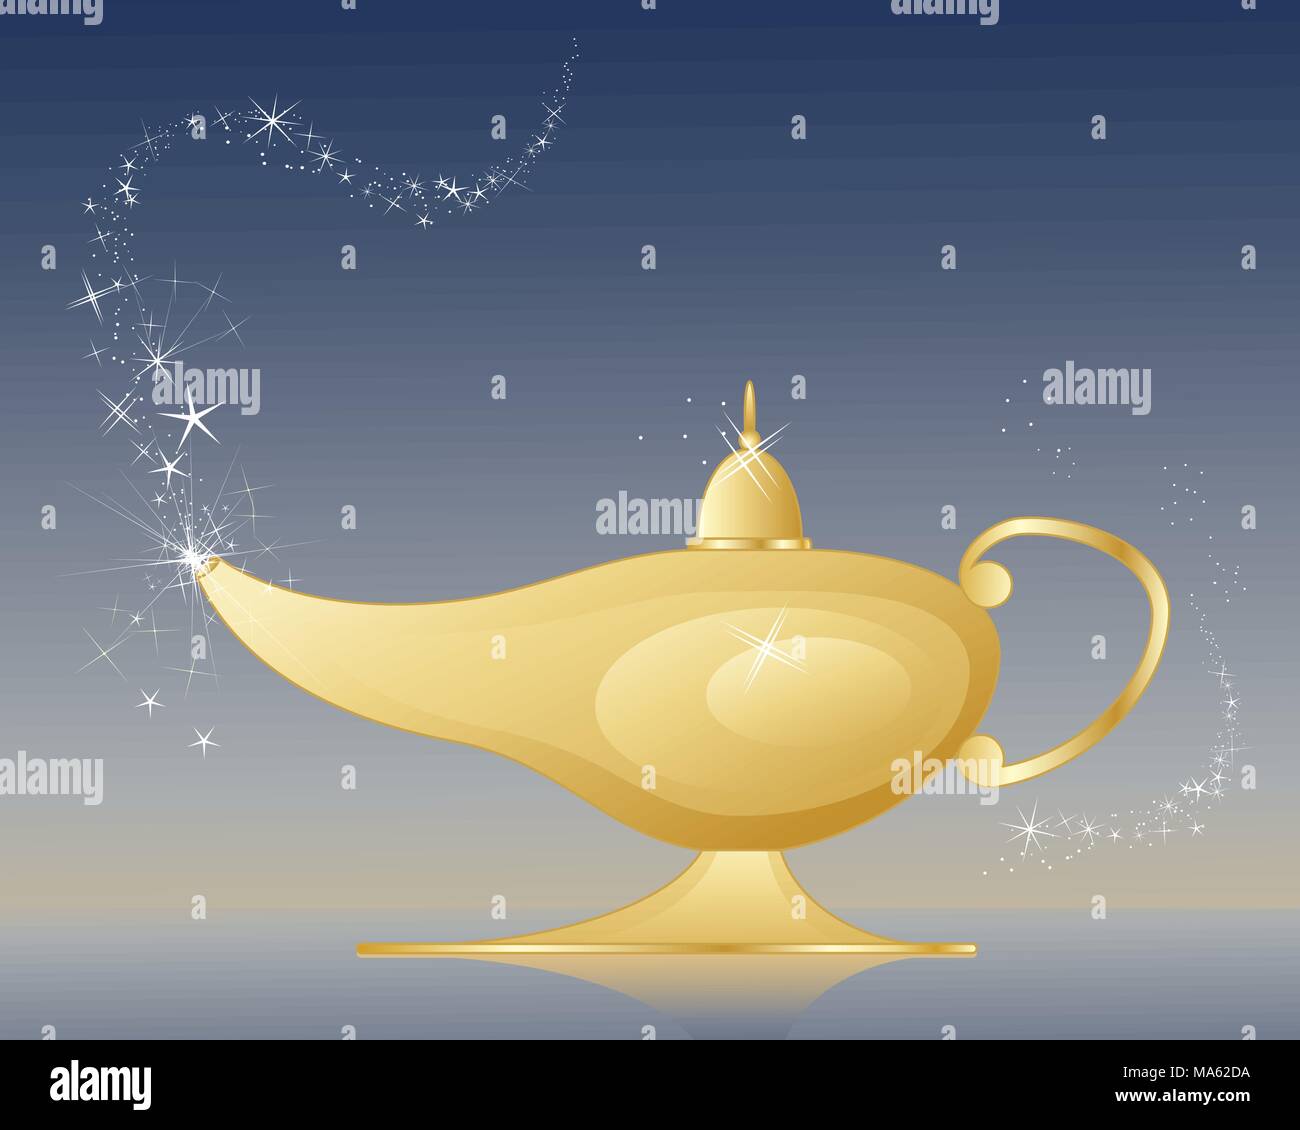 Un vecteur illustration en eps 10 format d'une lampe magique d'or sur un fond sombre avec sparkles et stars Illustration de Vecteur